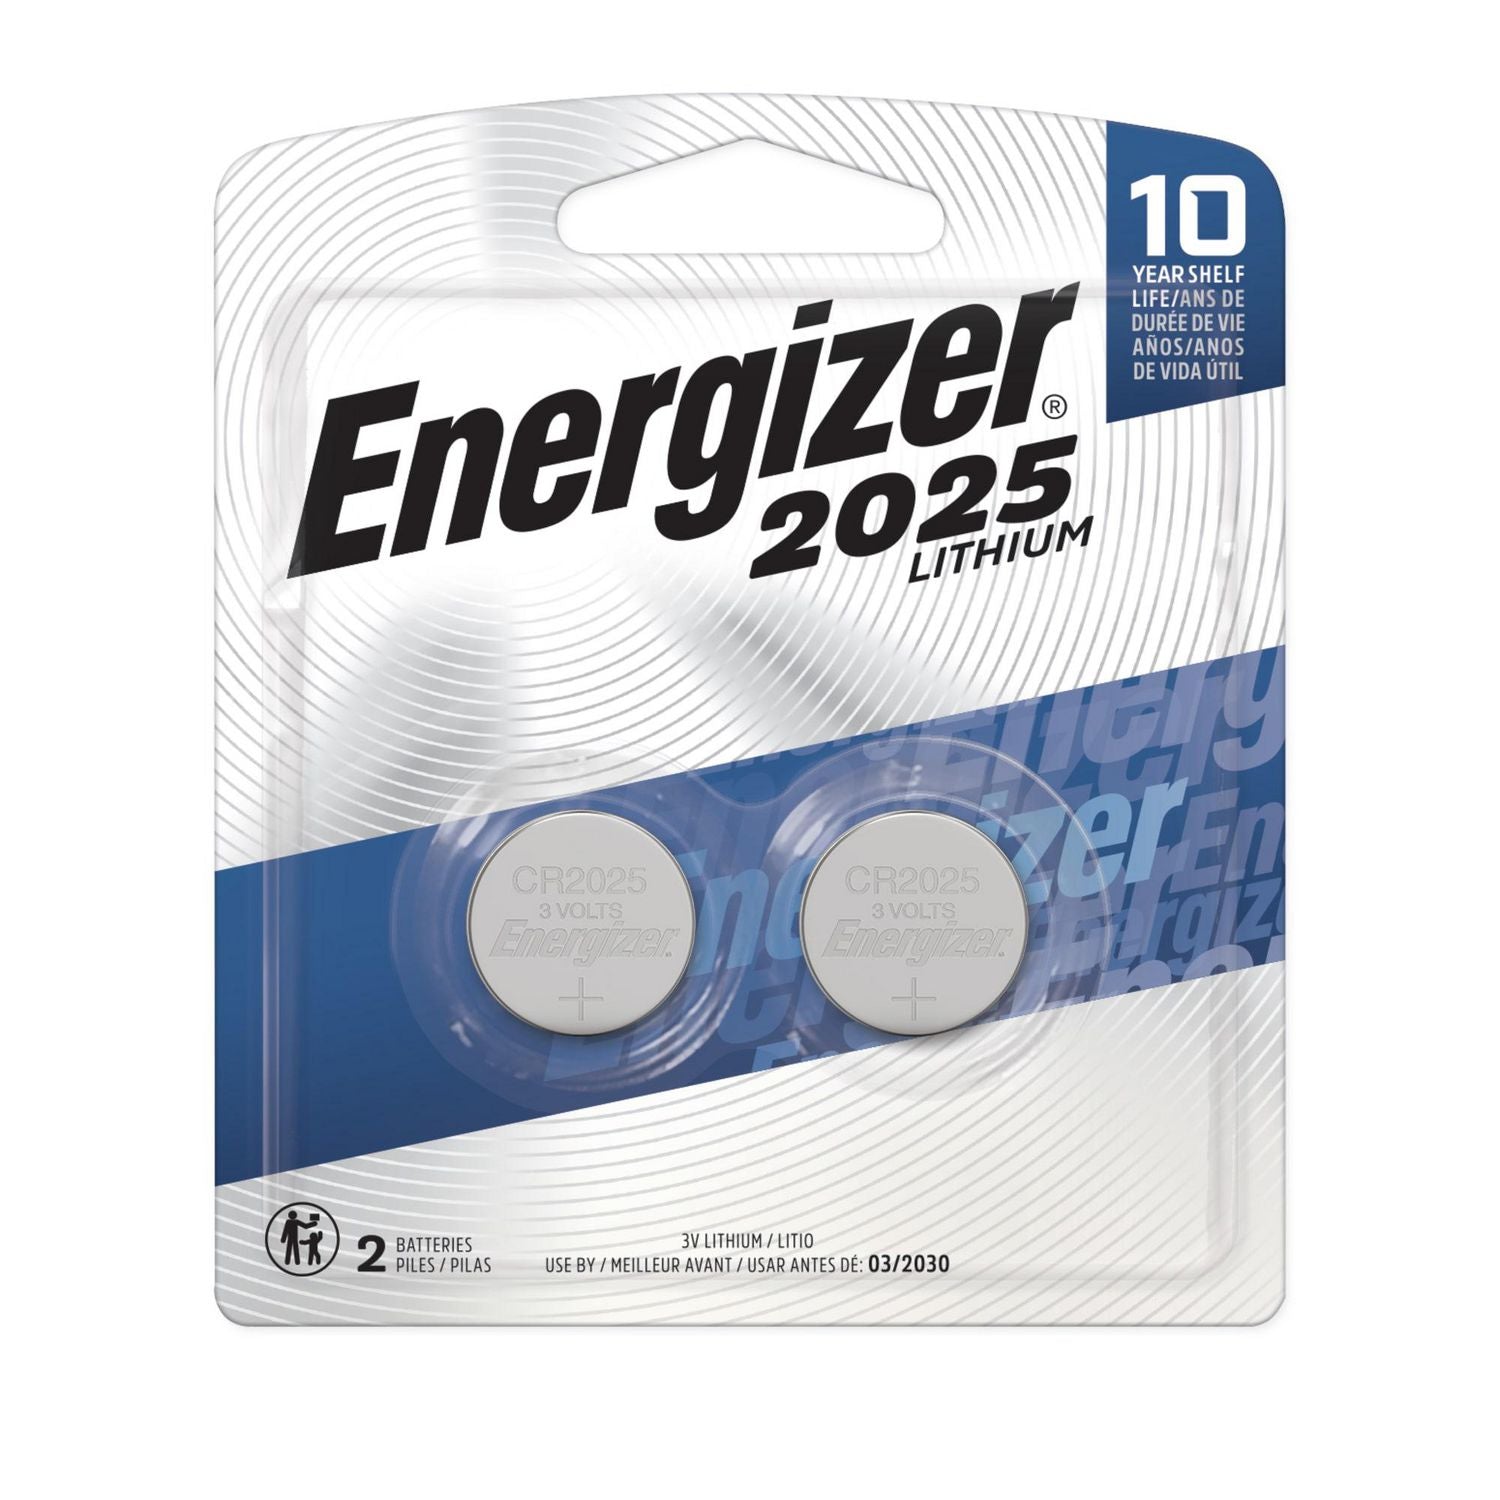 Energizer Lithium 2025 3V (2 Pack)